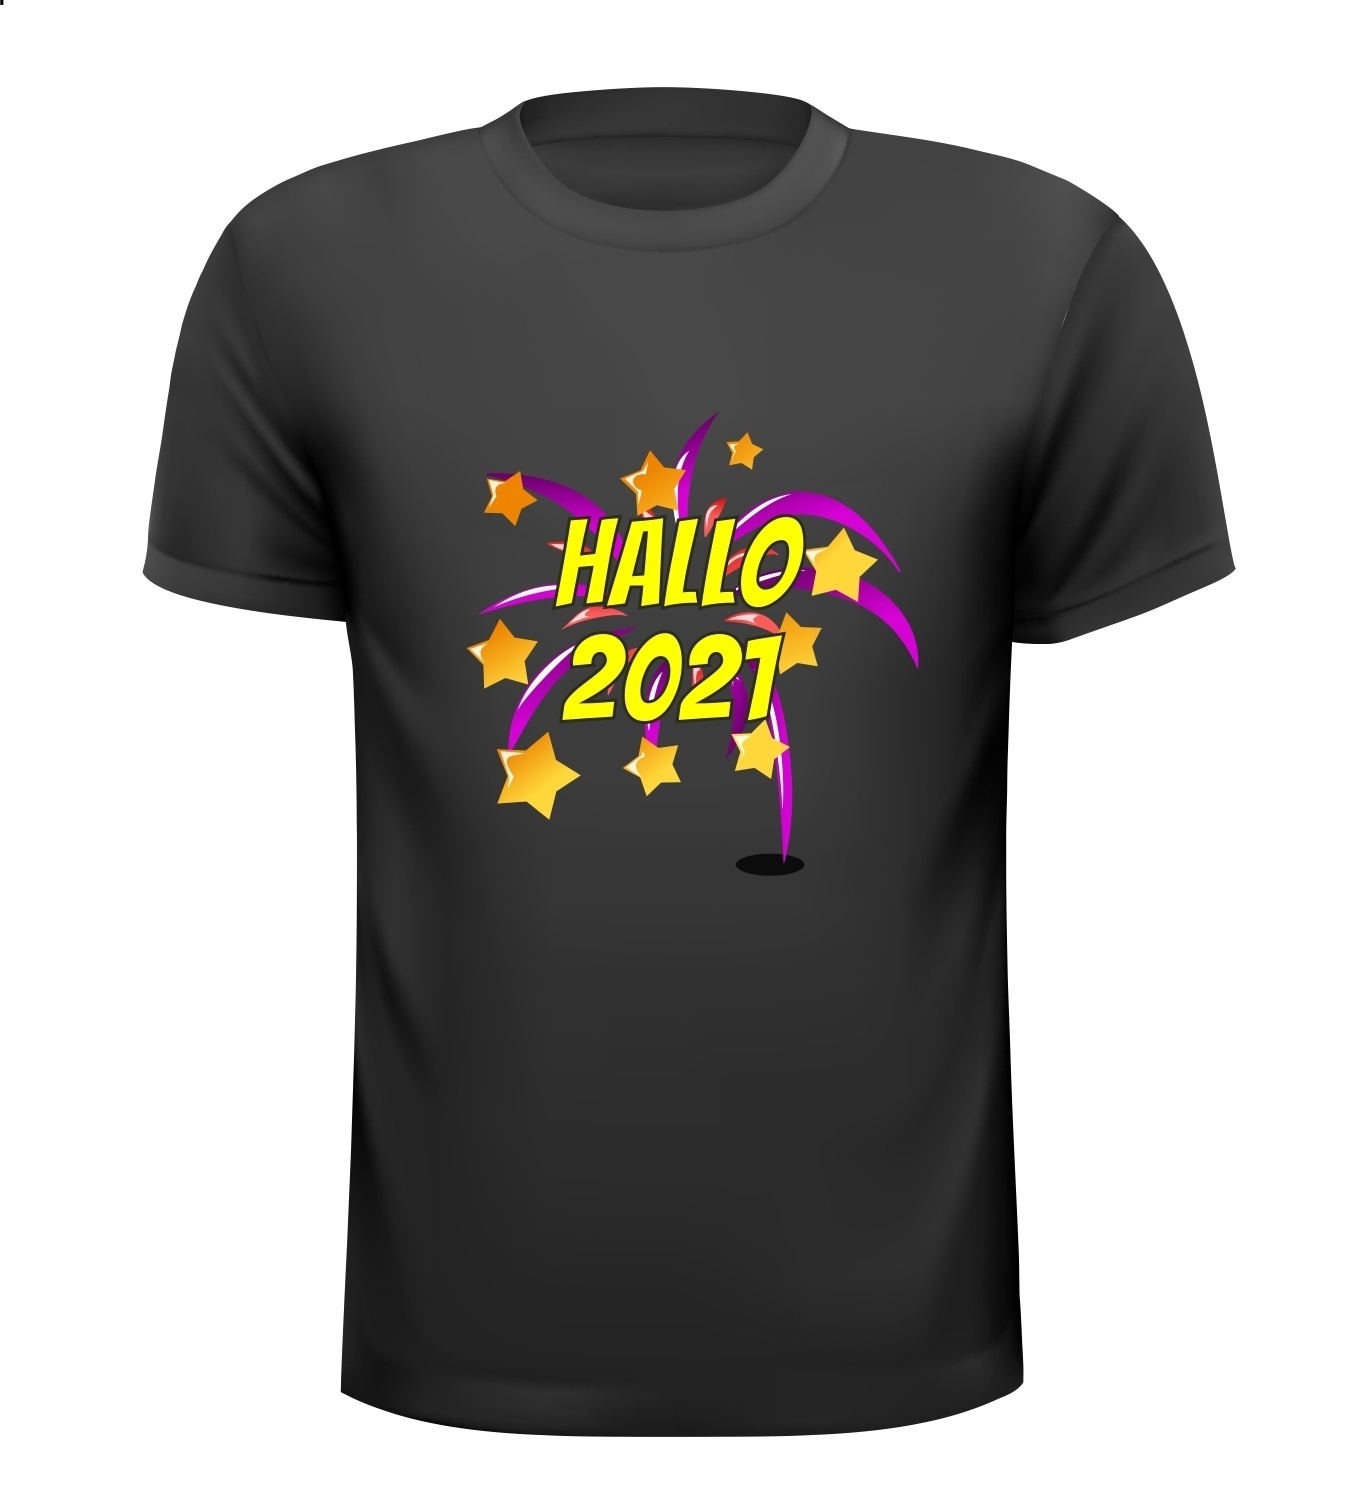 T-shirt Hallo 2021 jaarwisseling T-shirt oud en nieuw vuurwerk shirt